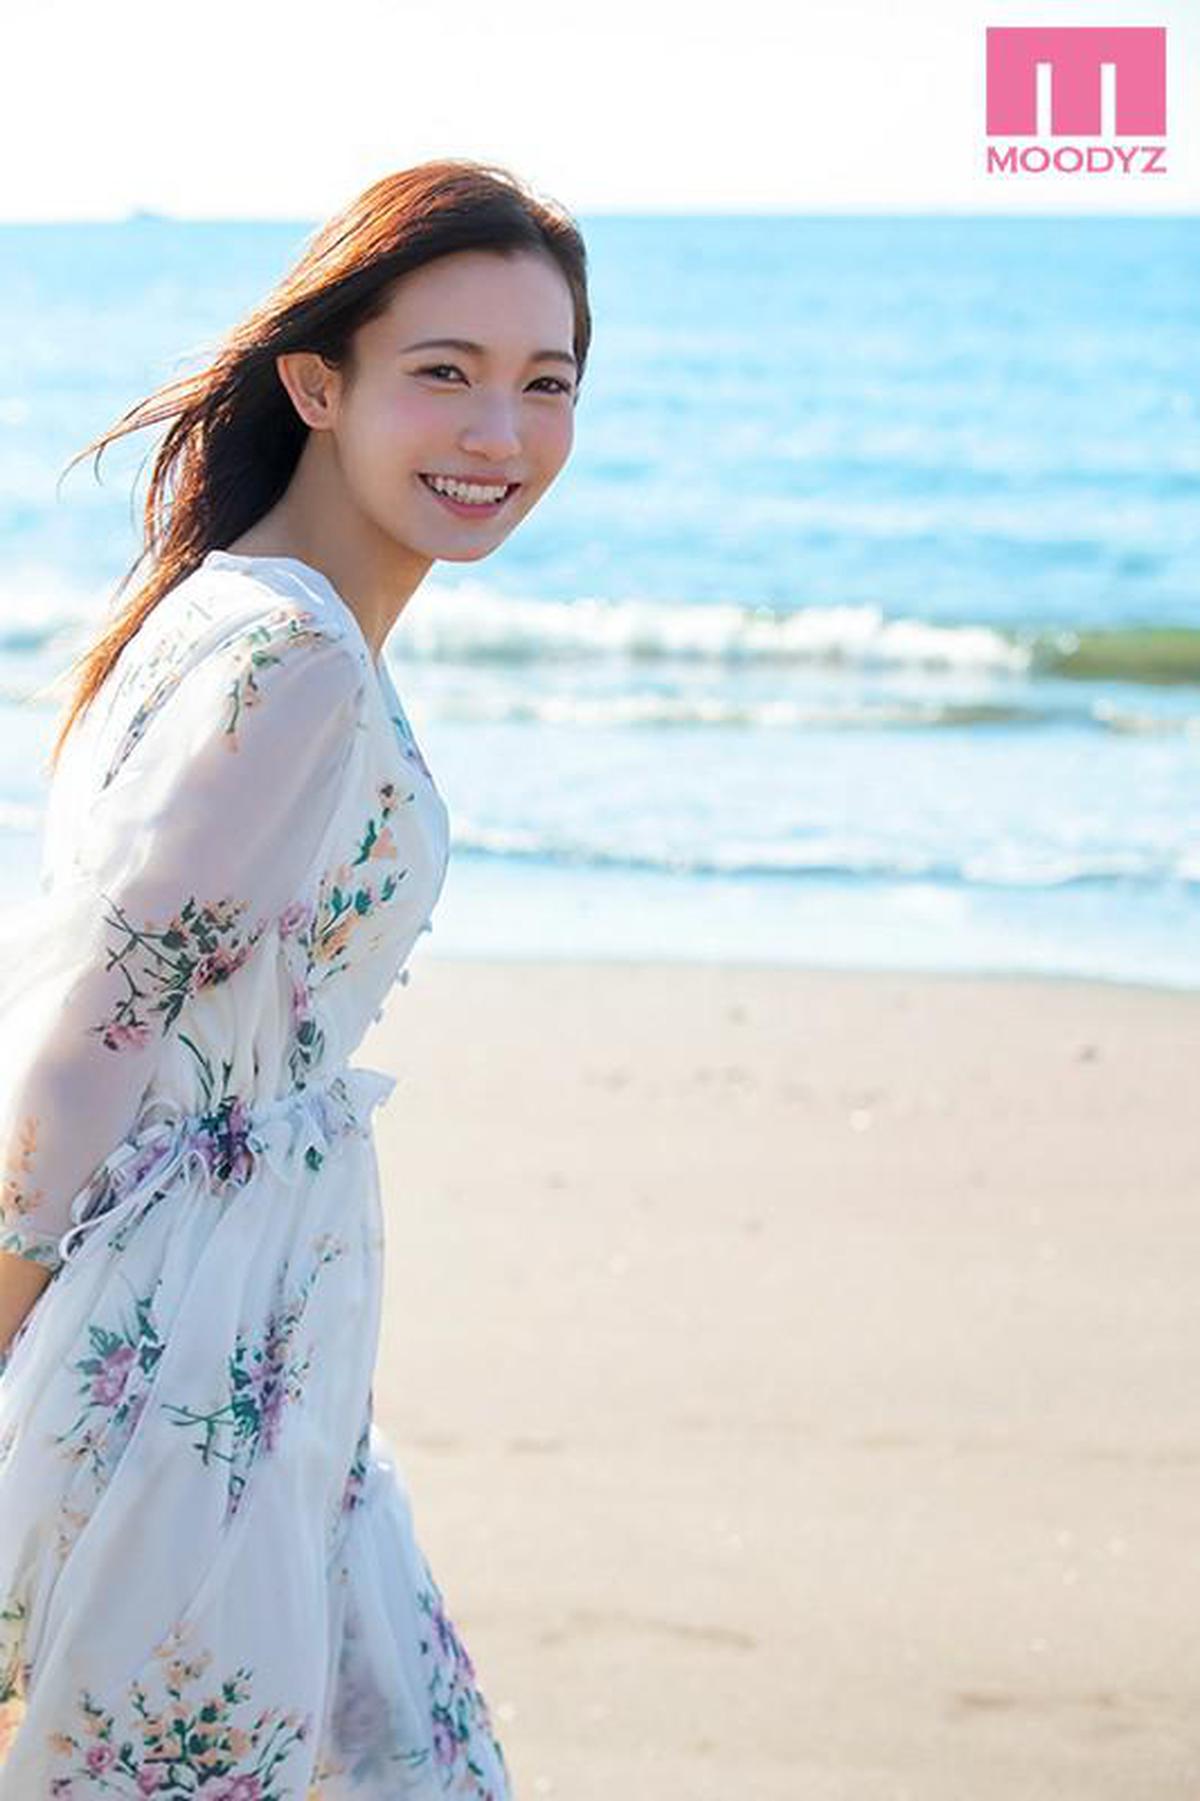 FHD MIDE-640 Quarter Aktive Studentin, gerade 20 Jahre alt Schöne und süße Sakino Koharu